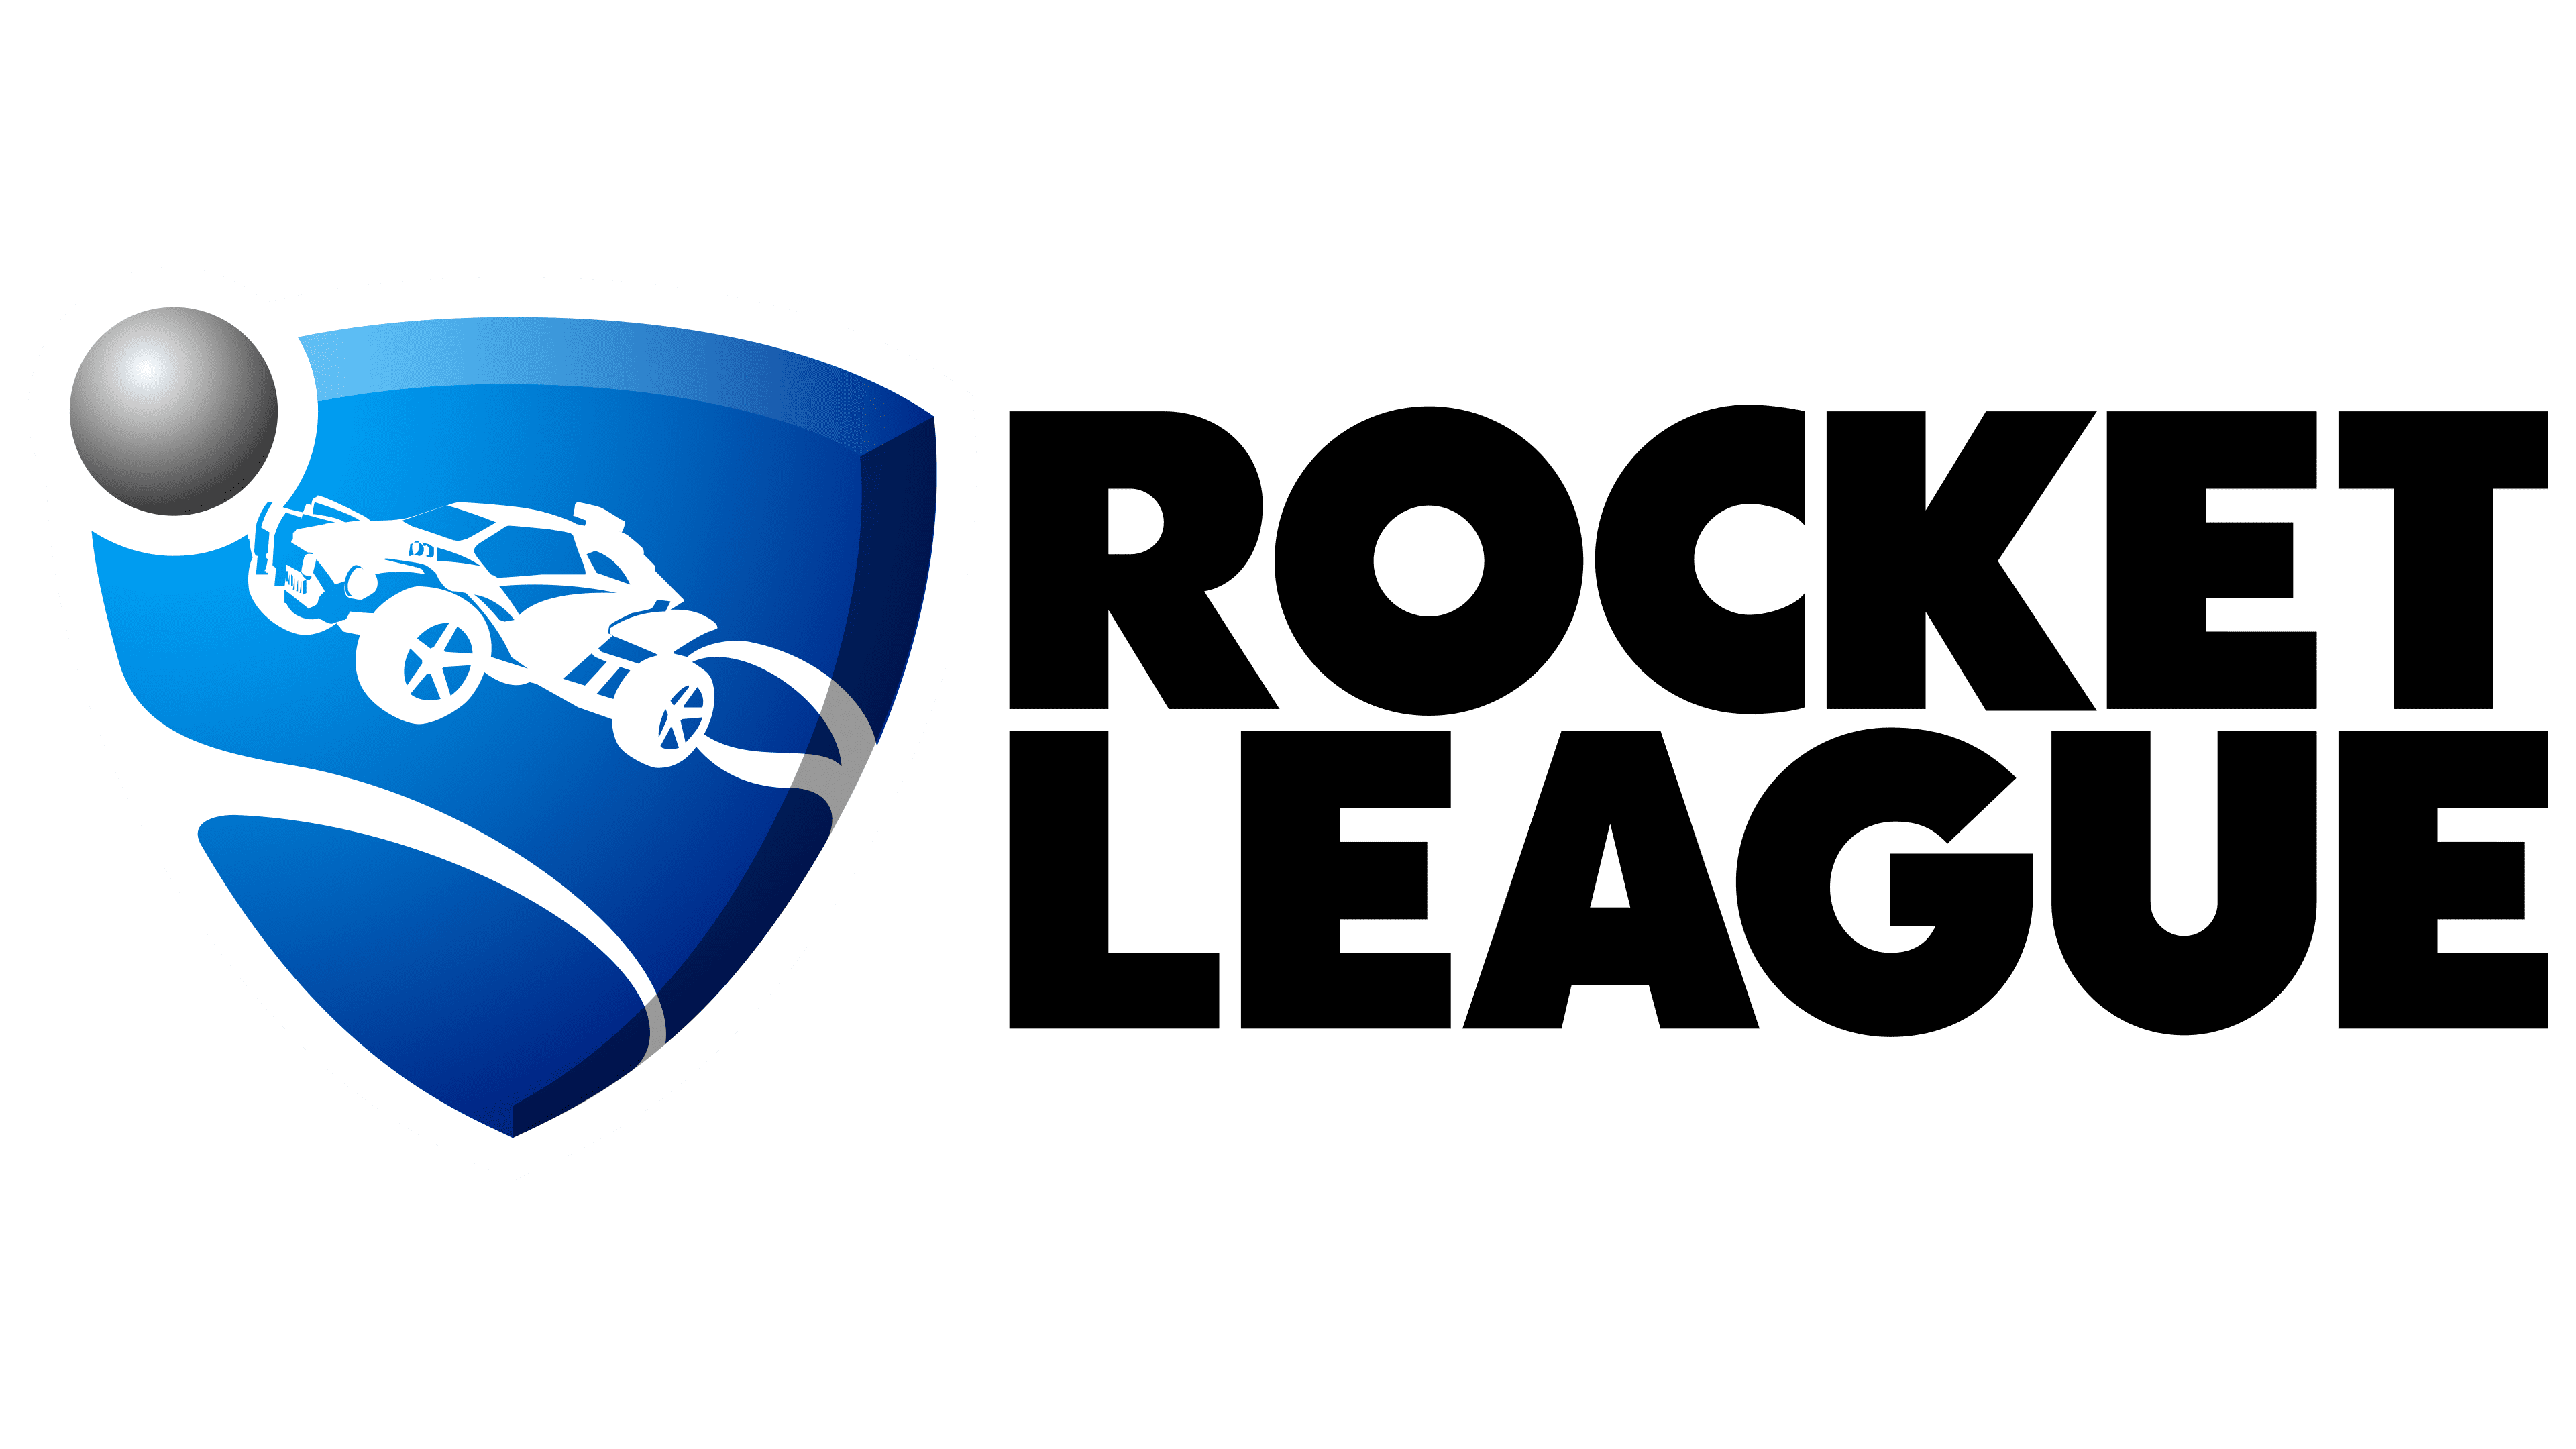 2d rocket league logo vanossgaming logo png